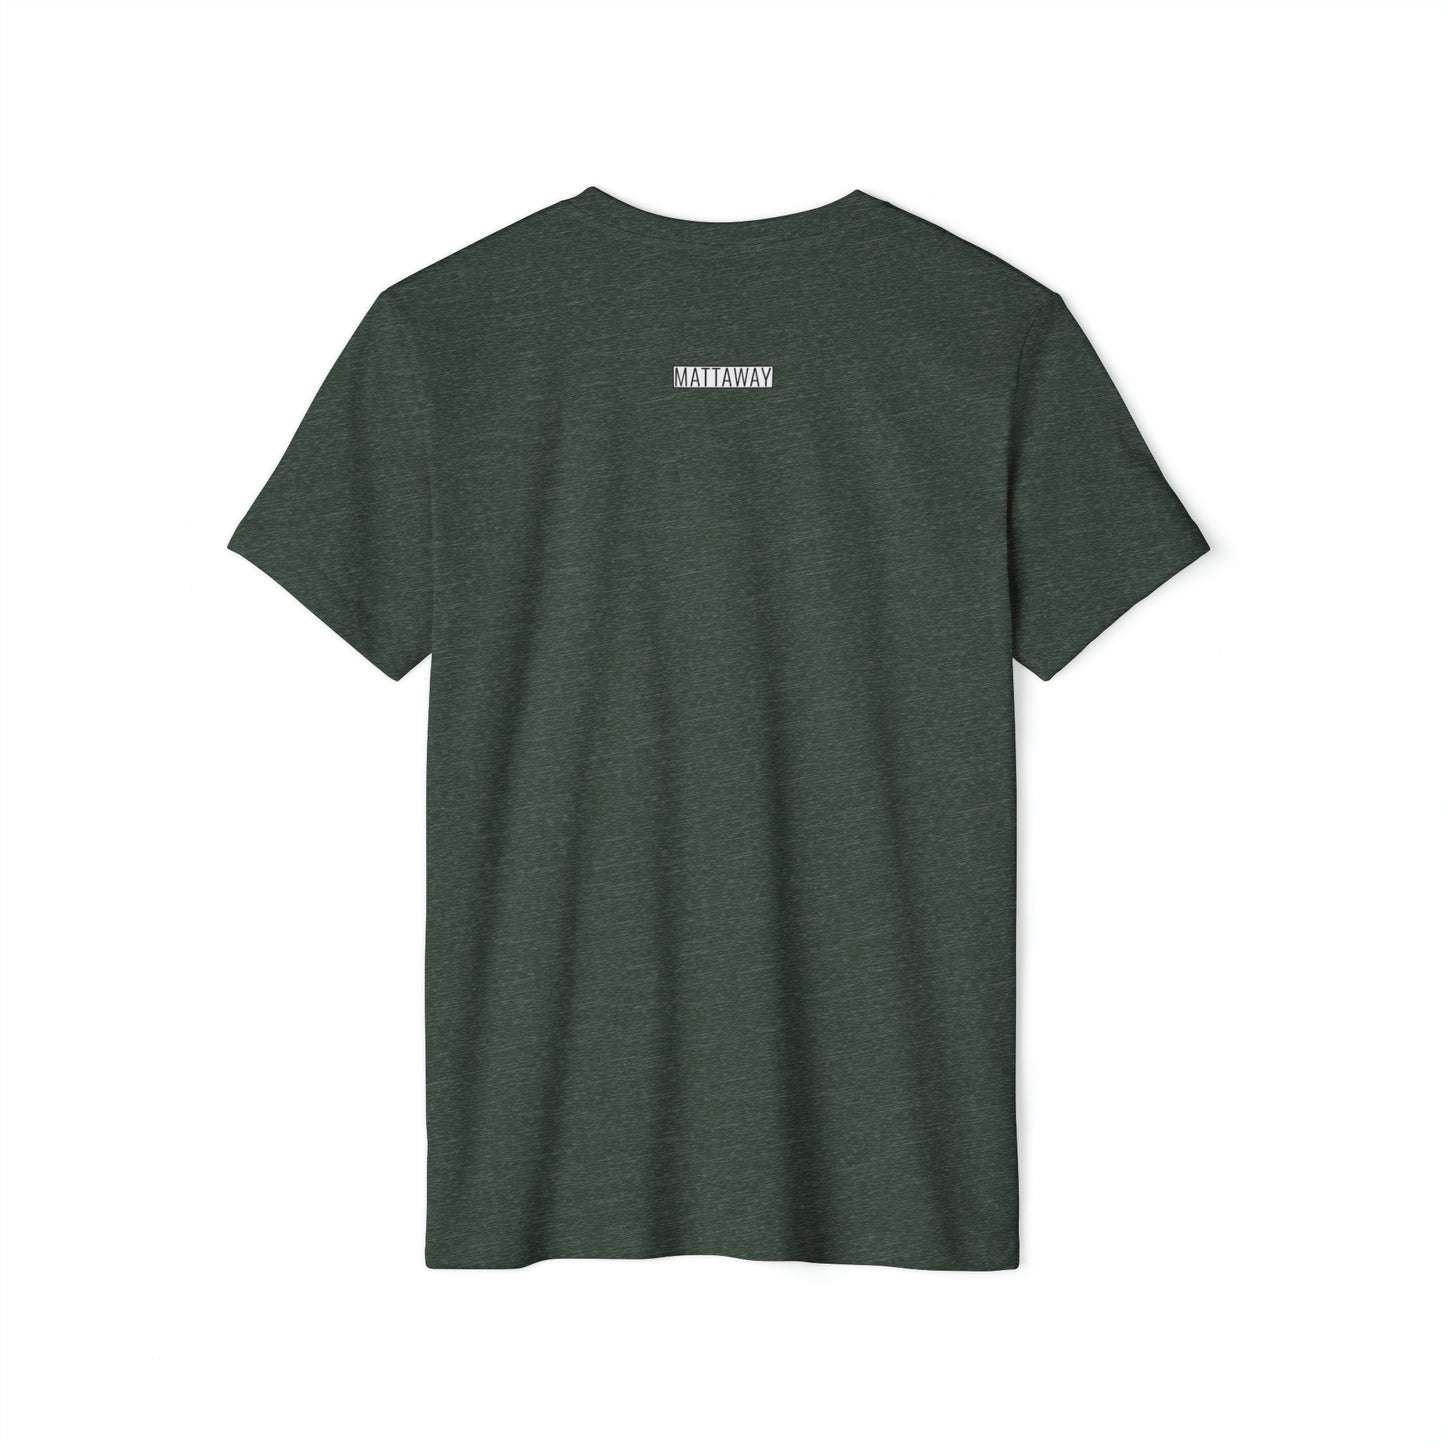 MINIMAL SHAPES 102 - Unisex Recycled Organic T-Shirt